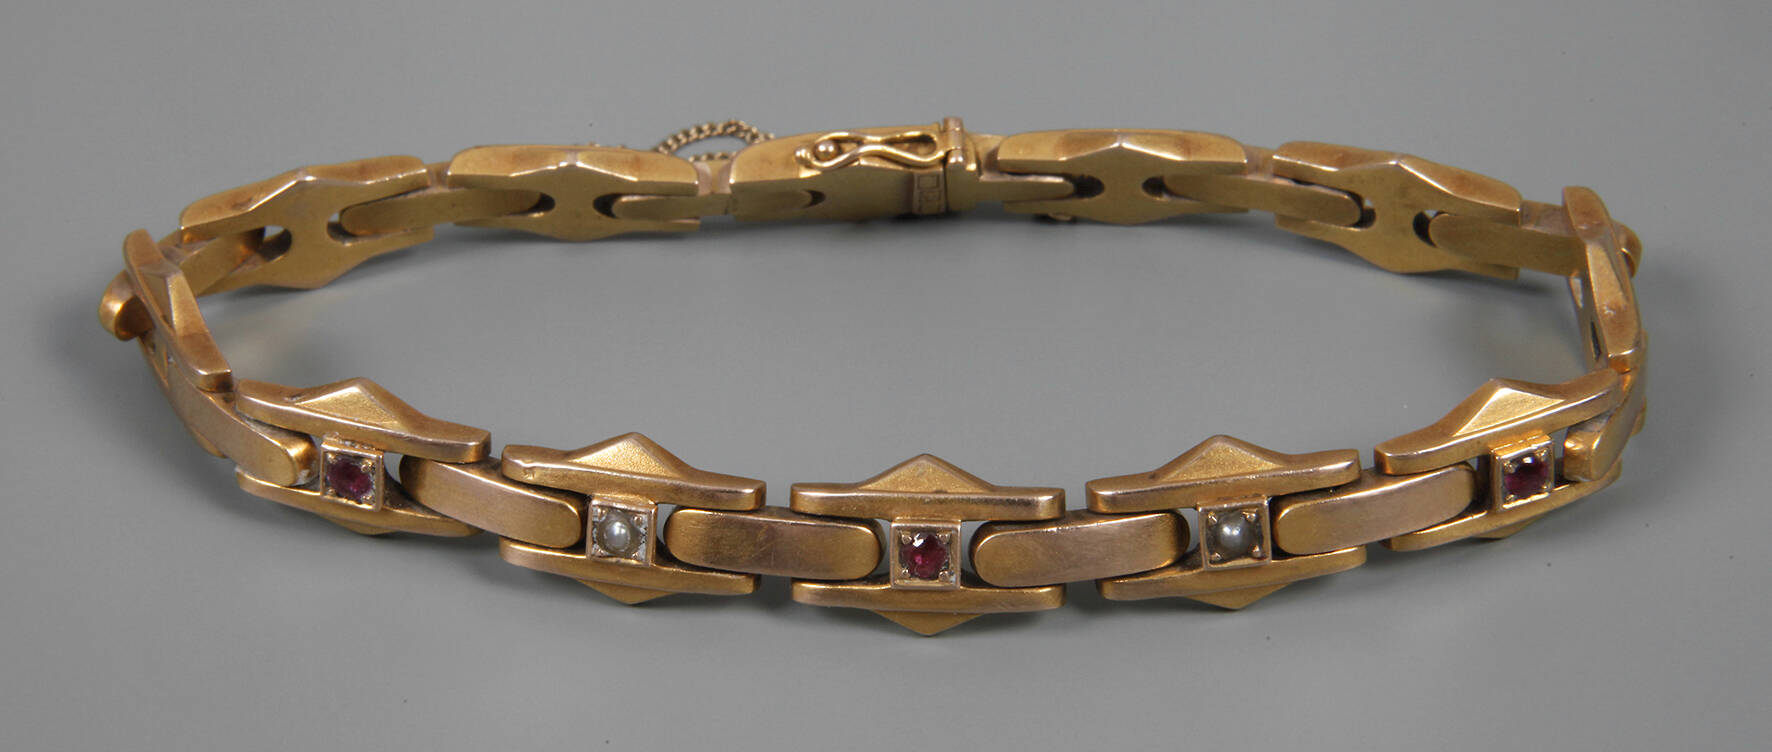 Armband mit Rubinen und Perlen